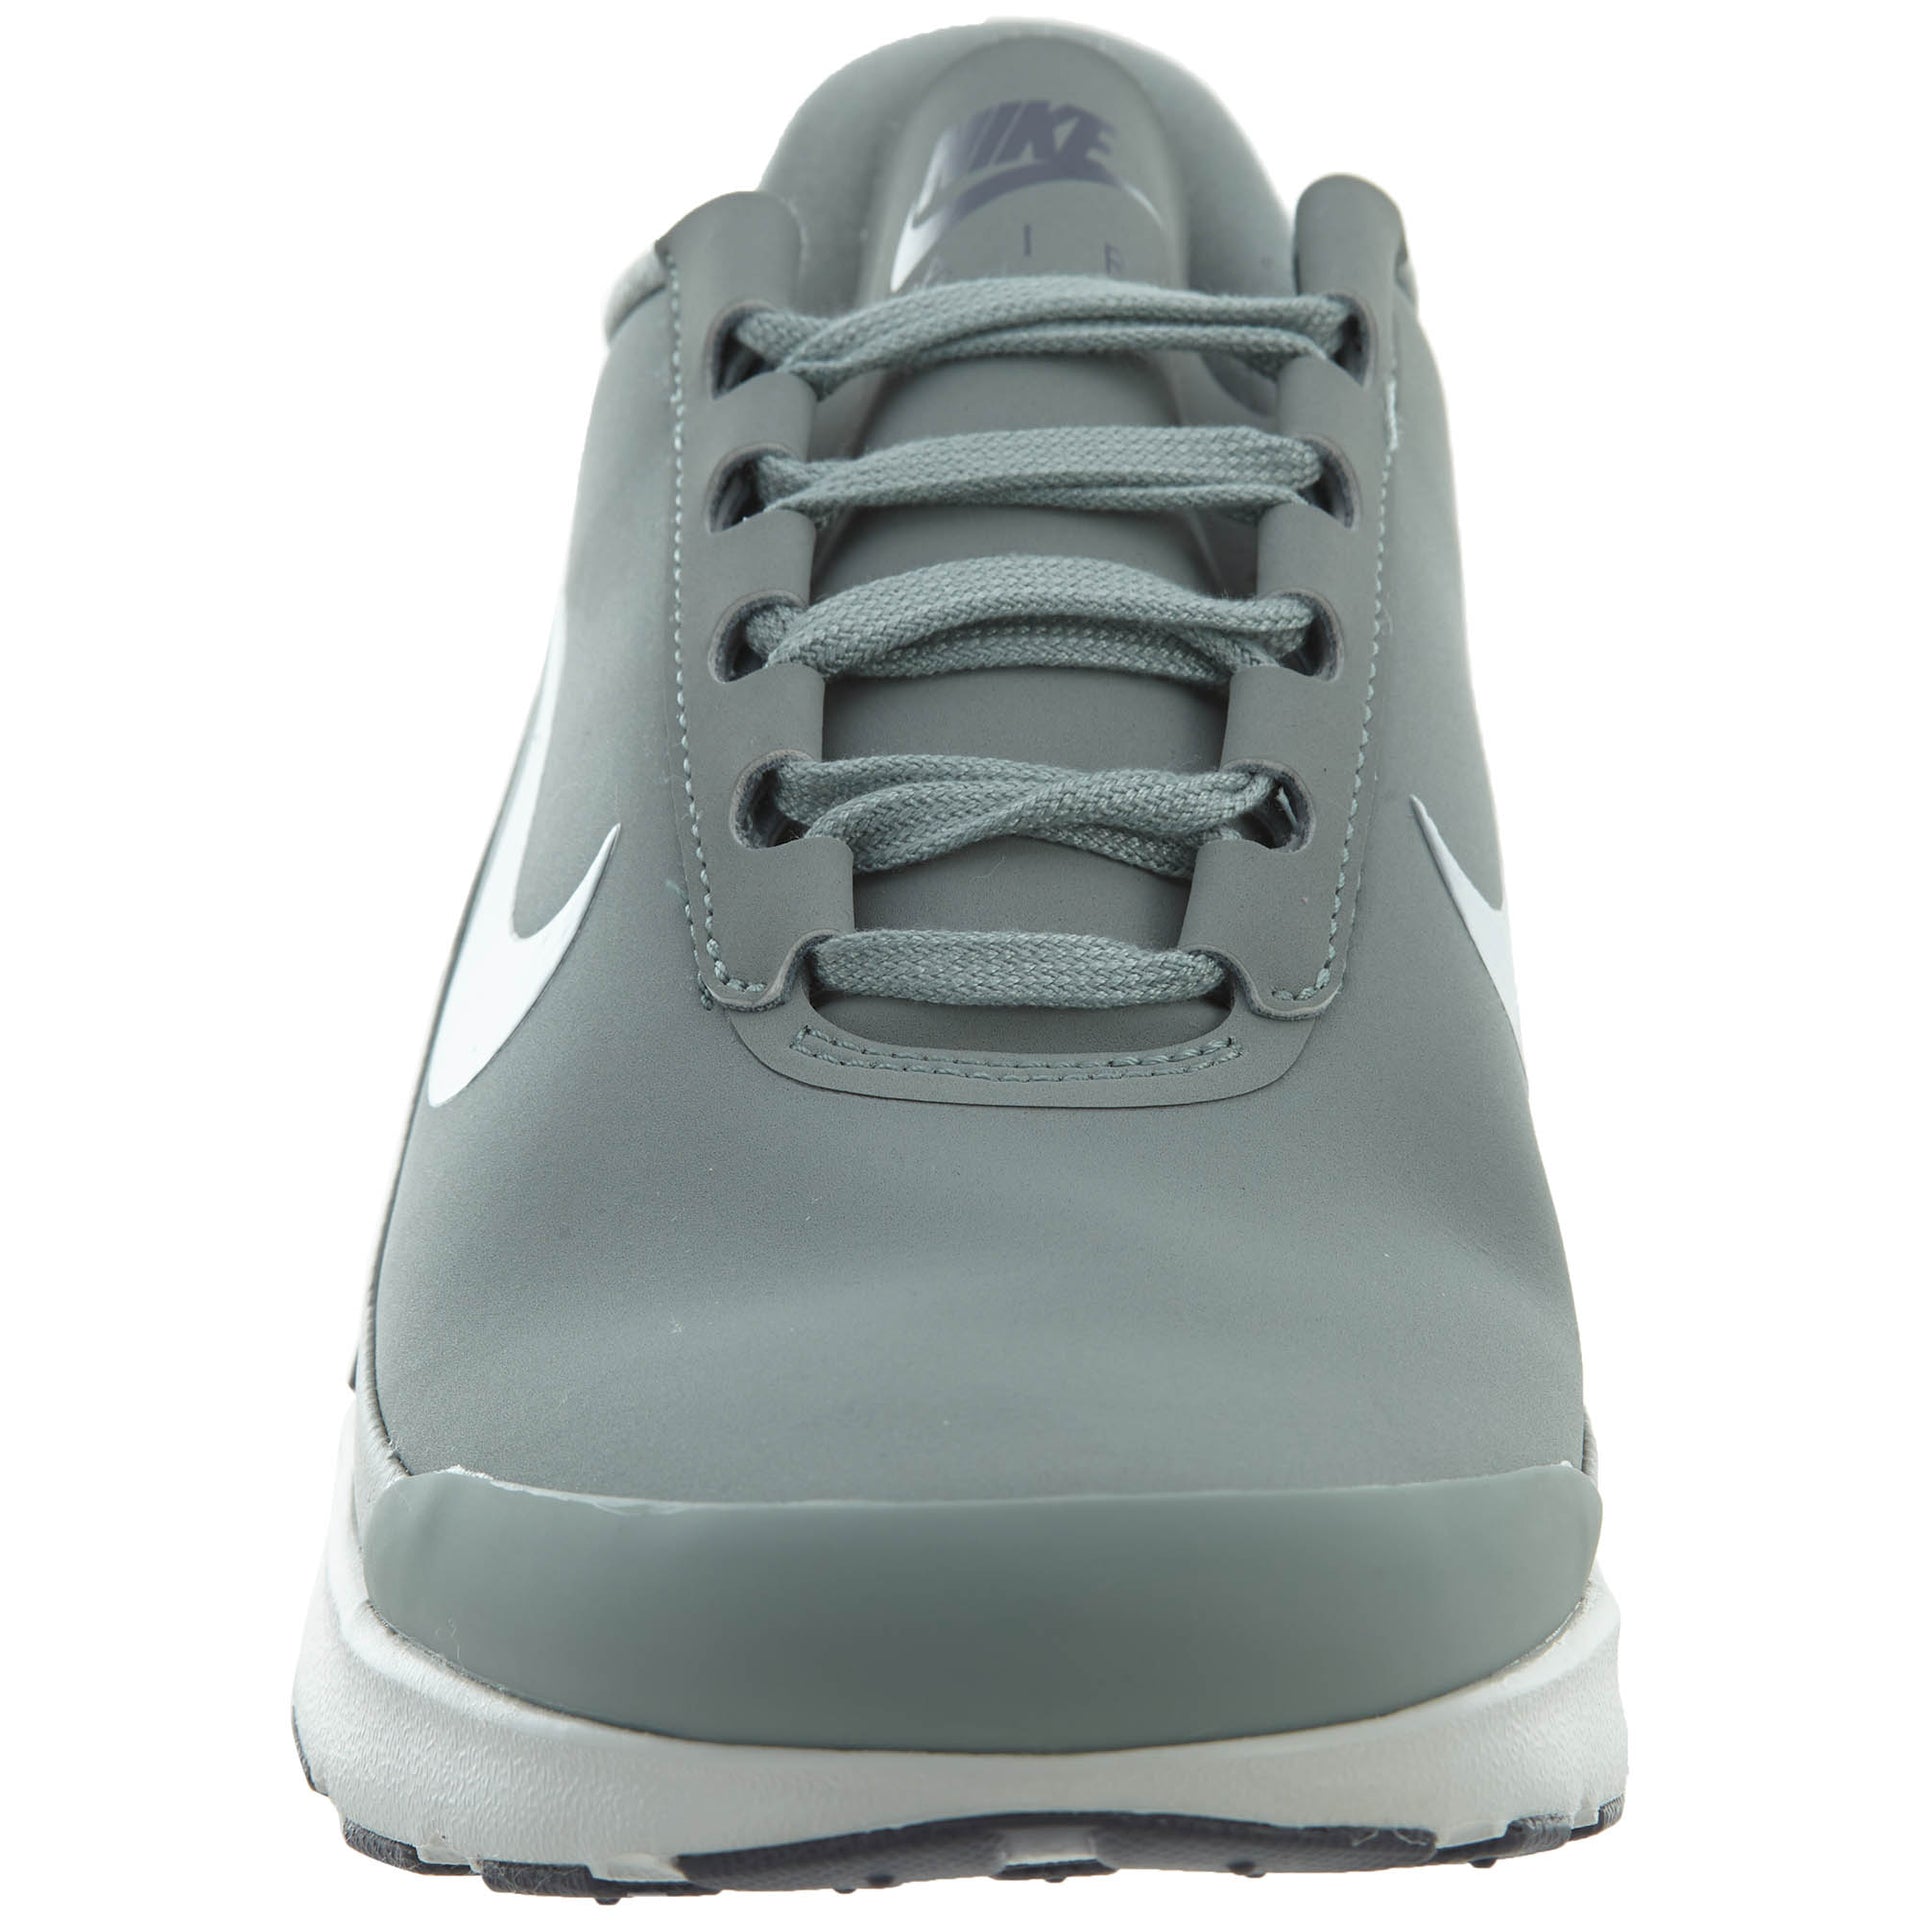 Nike Air Max Jewell Leather Pumice Metallic Cool Grey (Women's)